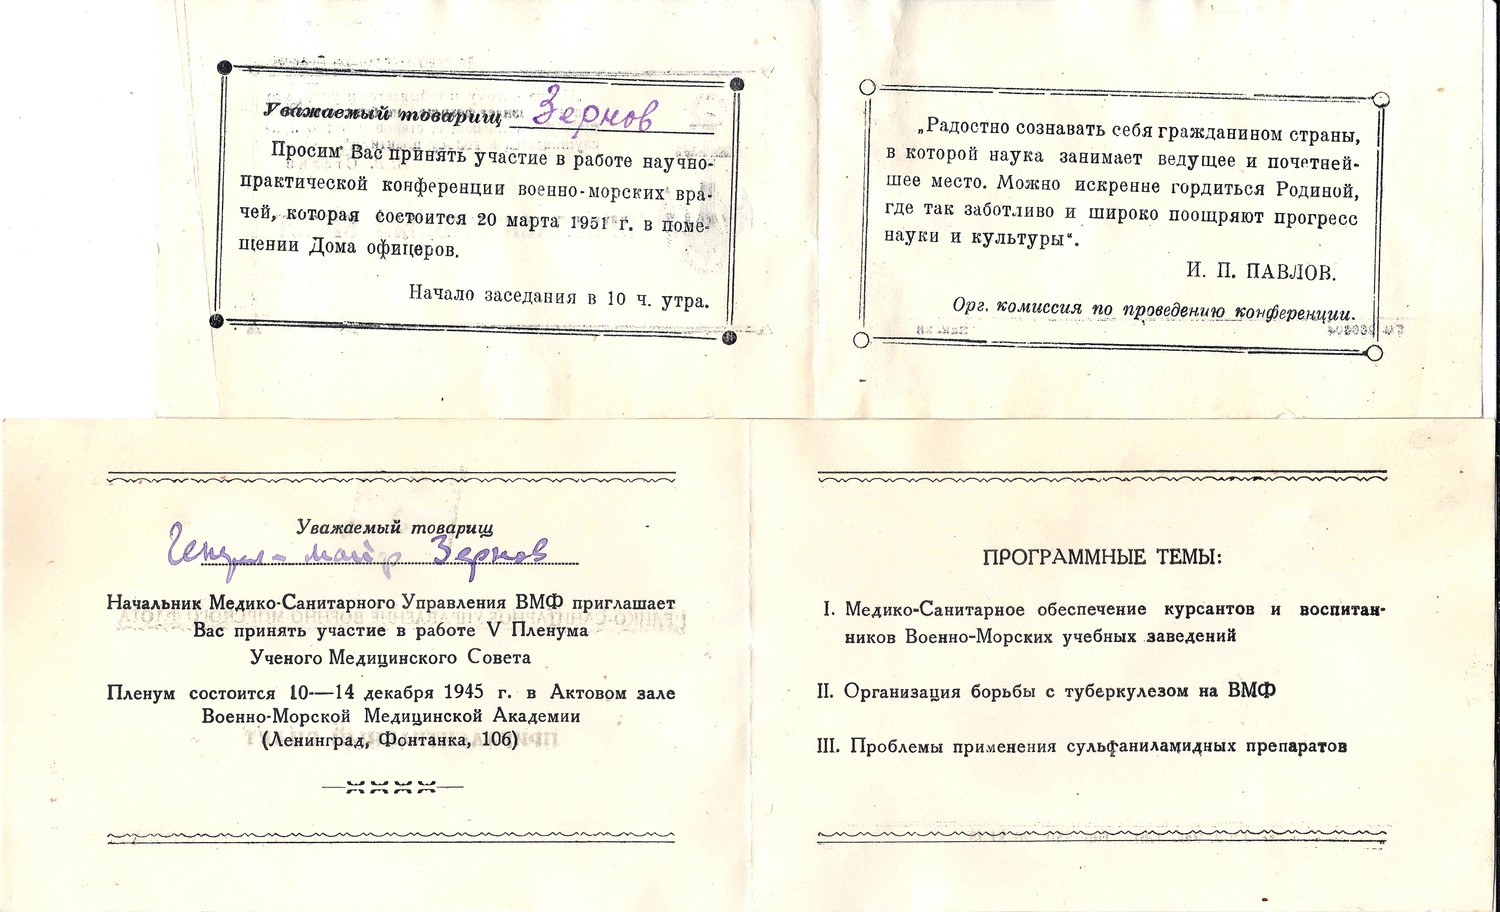 3 пригласительных билета и программа научной конференции. Вторая половина 1940-х - начало 1950-х годов. Их архива М.А. Зернова.